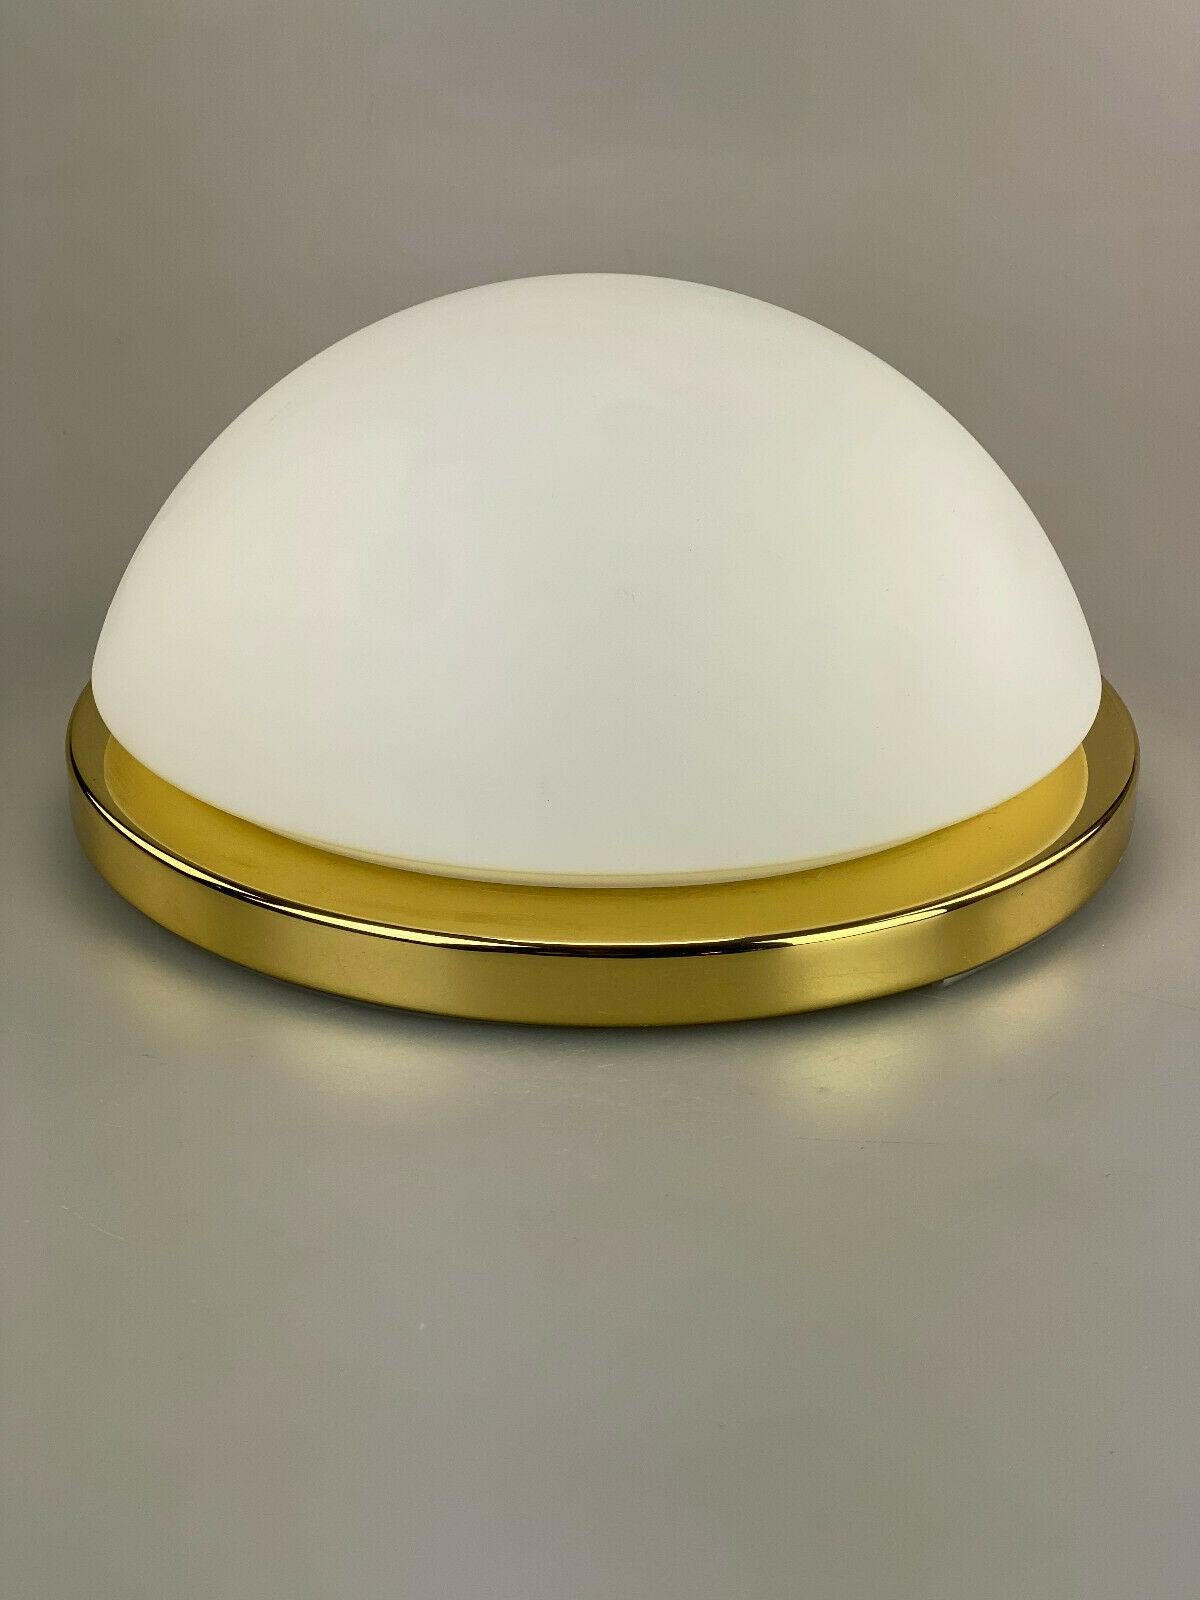 70s Limburg Glashütte Plafoniere Ceiling Lamp Glass Space Design Lamp For Sale 3